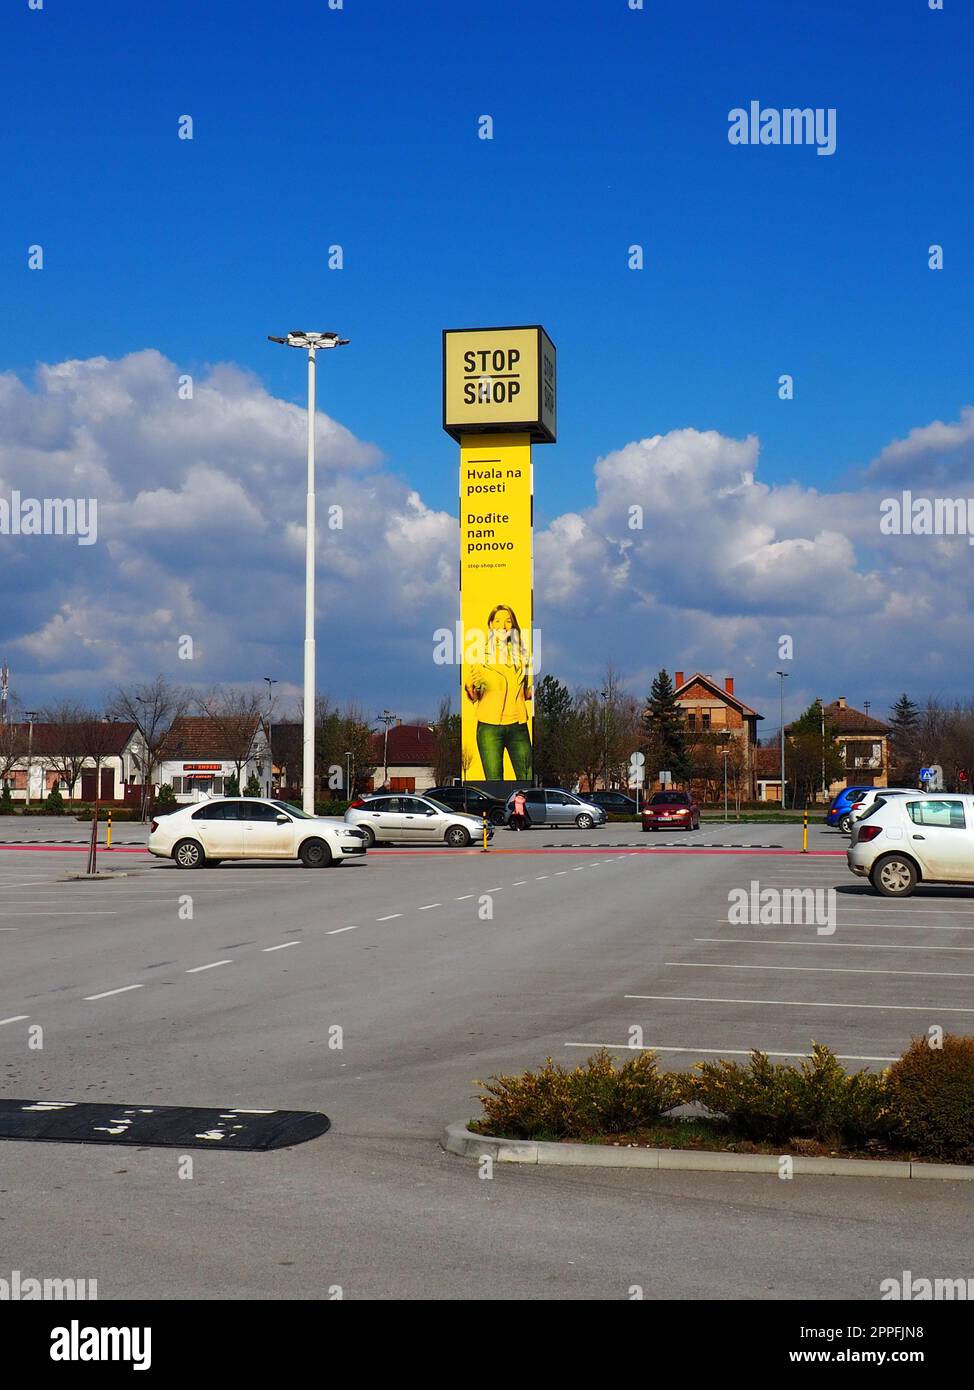 Épicerie Stop and Shop, poteau Stop Shop avec des noms de marque, peint en jaune. Parking devant un grand centre commercial. Sremska Mitrovica, Serbie, 16 mars 2023 Manie du shopping et consumérisme. Banque D'Images